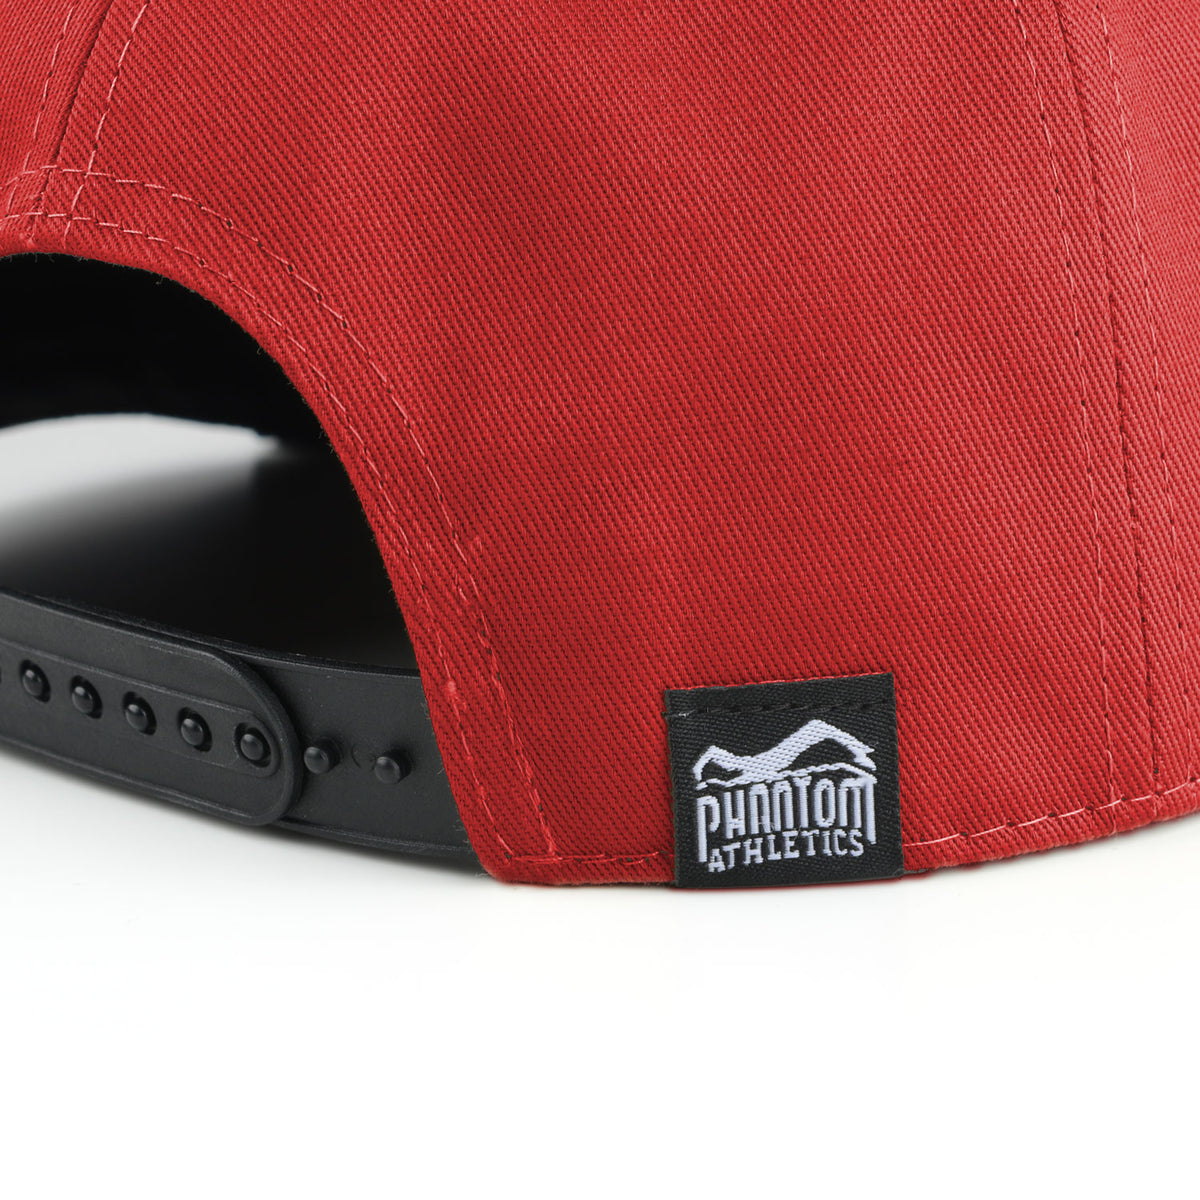 Phantom Cap für Kampfsportler. Rot/Schwarze Basecap mit flachem Schirm und hochwertig gesticktem Phantom Athletics Logo. Ideal für alle MMA Kämpfer, Boxer, BJJ Kämpfer, Thaiboxer oder Kickboxer.